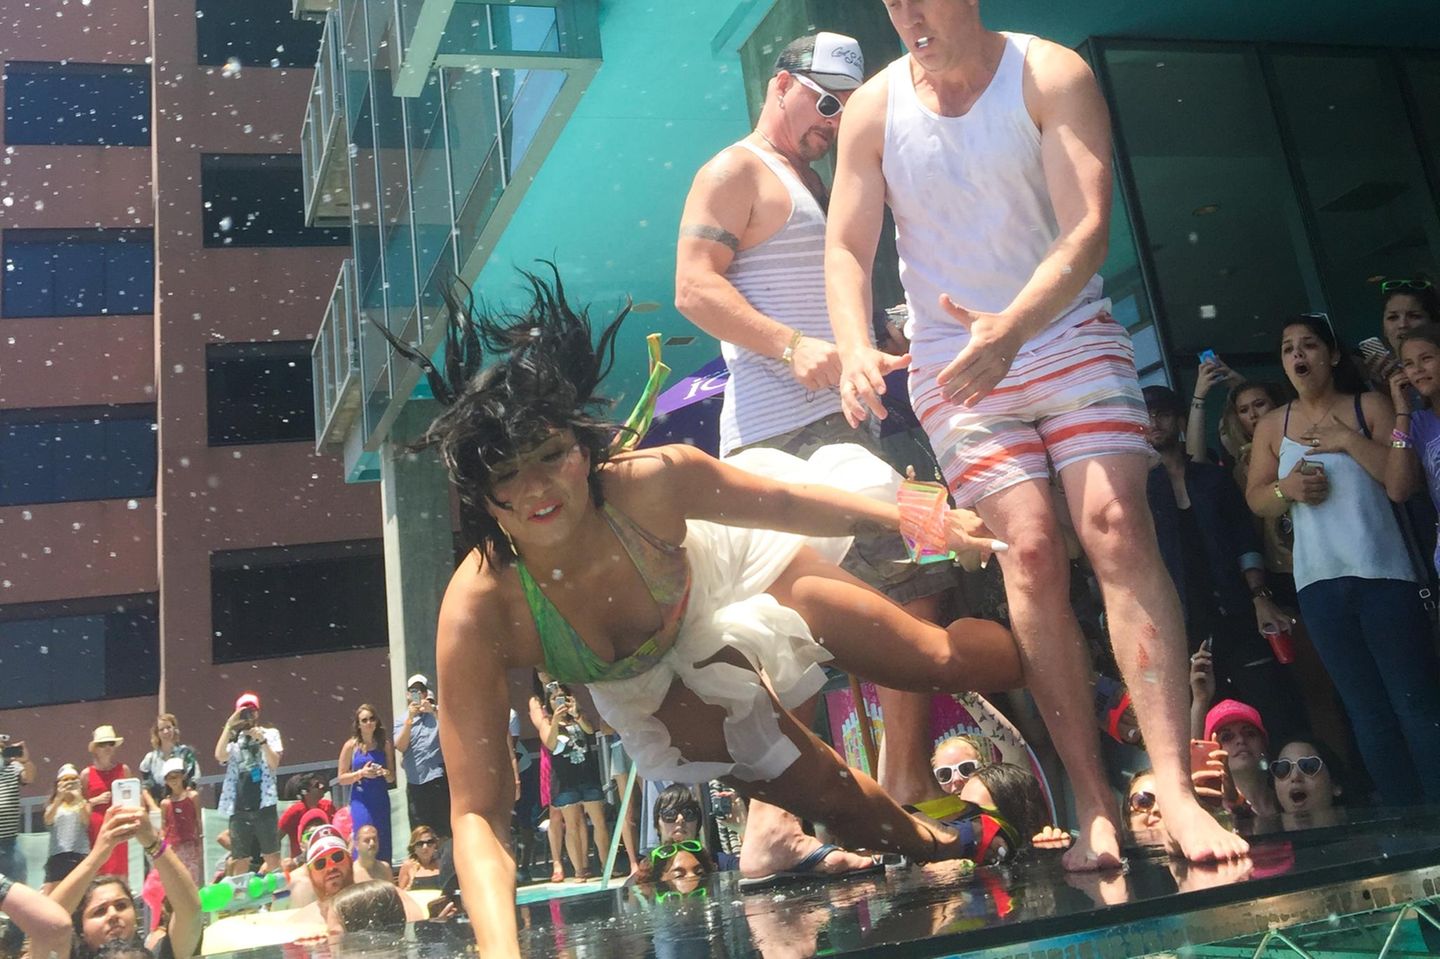 Stage-Diving einmal anders: Demi Lovato stürzt ziemlich uncool vor hunderten von Fans auf der "KISS FM Summer Pool Party" In Los Angeles.